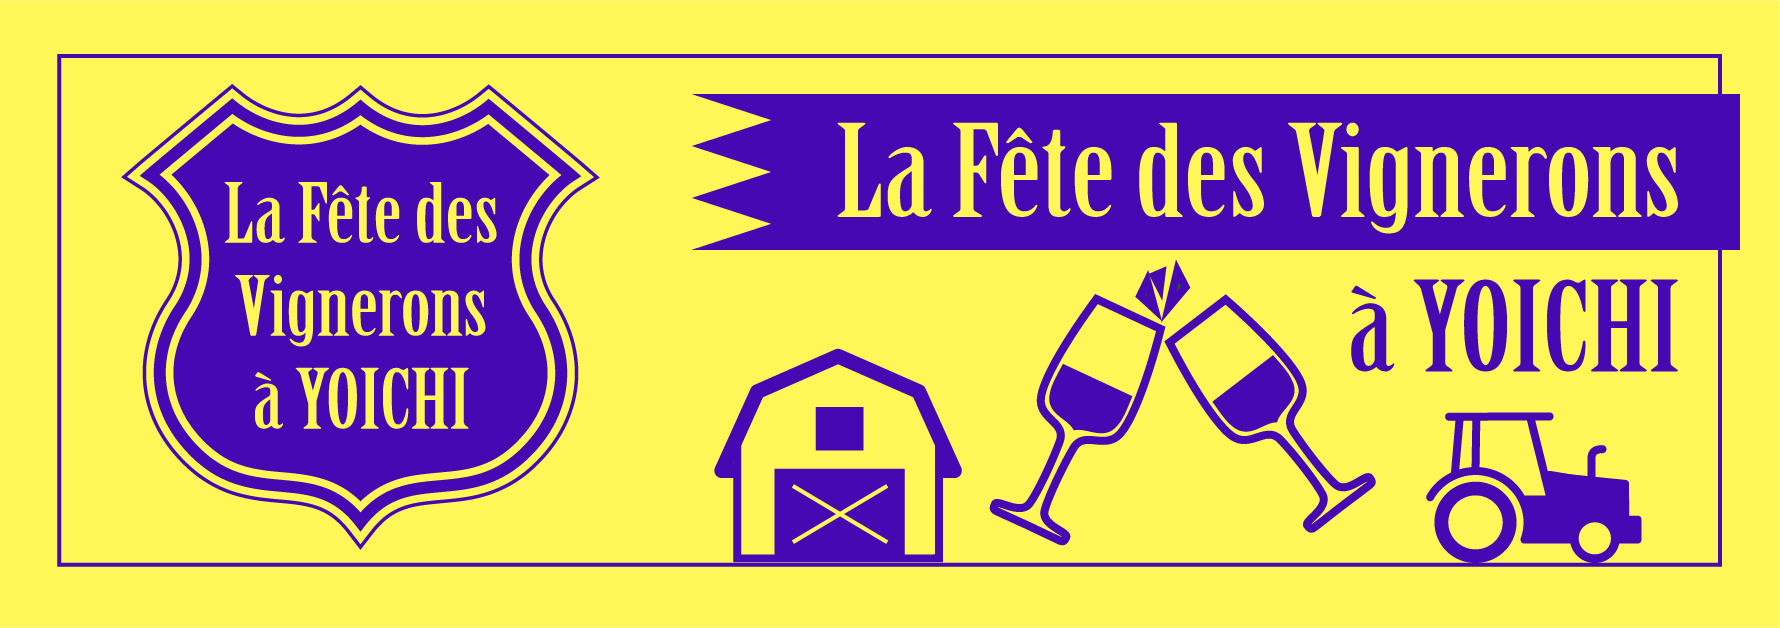 ラフェト・デ・ヴィニュロン・ア・ヨイチのロゴ